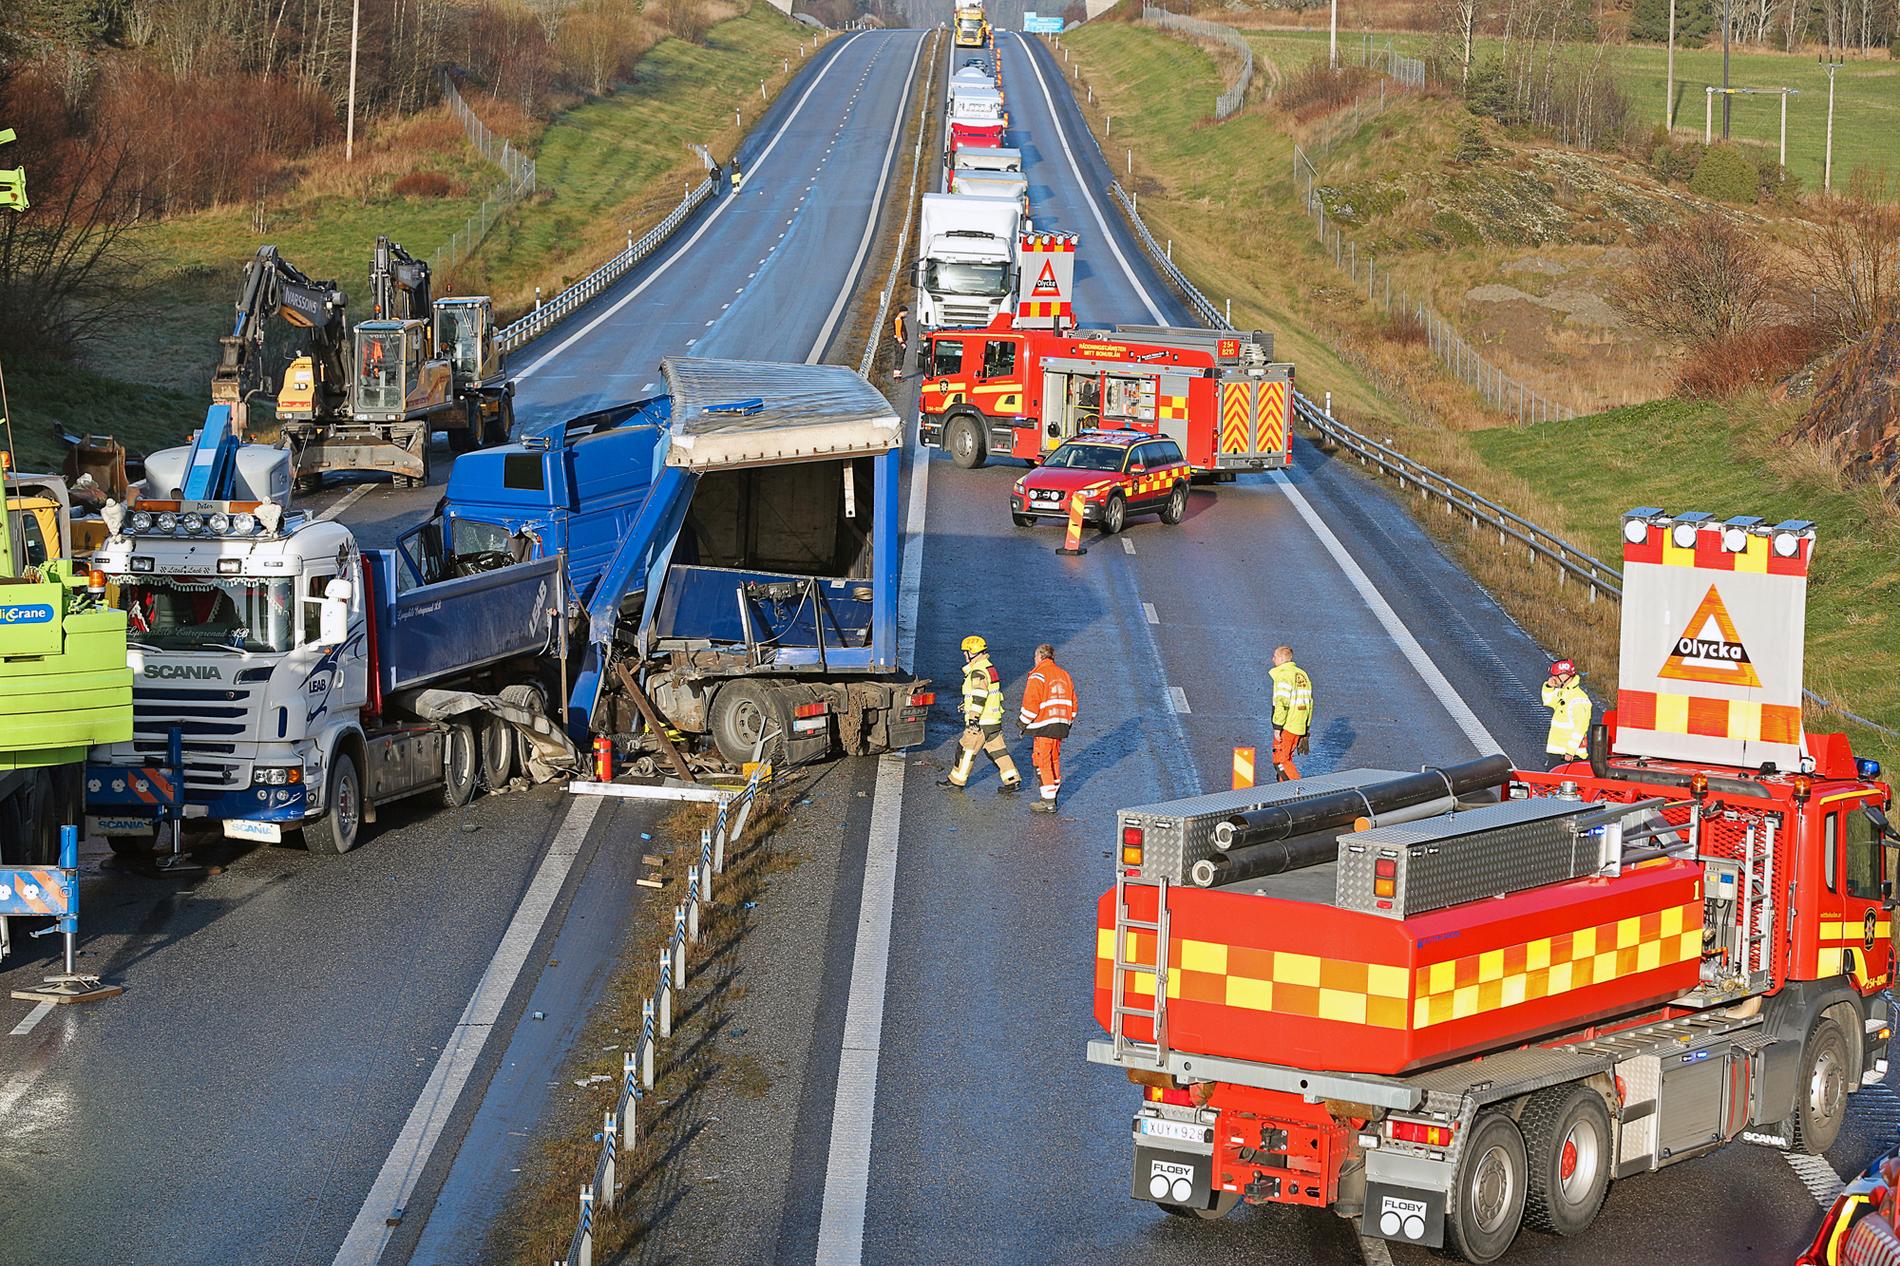 Flera olyckor med lastbilar inblandade på E6 i Munkedal vid Dingle, E6 helt avstängd på en lång sträcka då flera olyckor inträffat inom några kilometer.